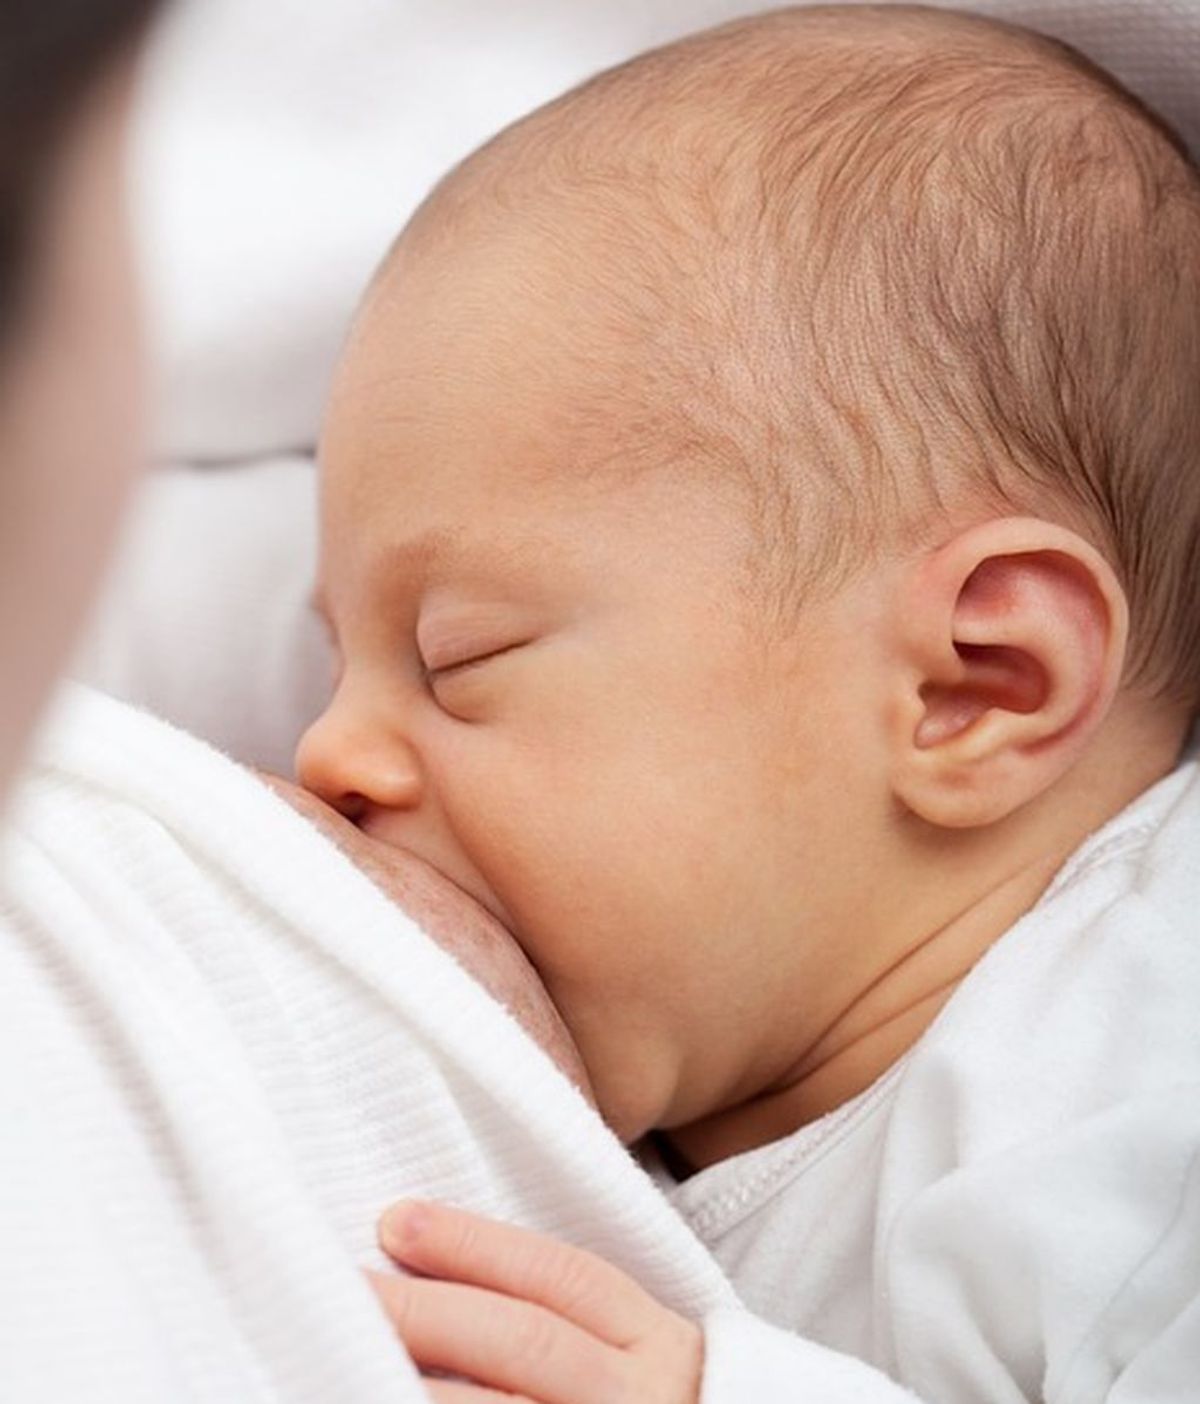 La alimentación en los bebés recién nacidos, medida para evitar trastornos psicológicos